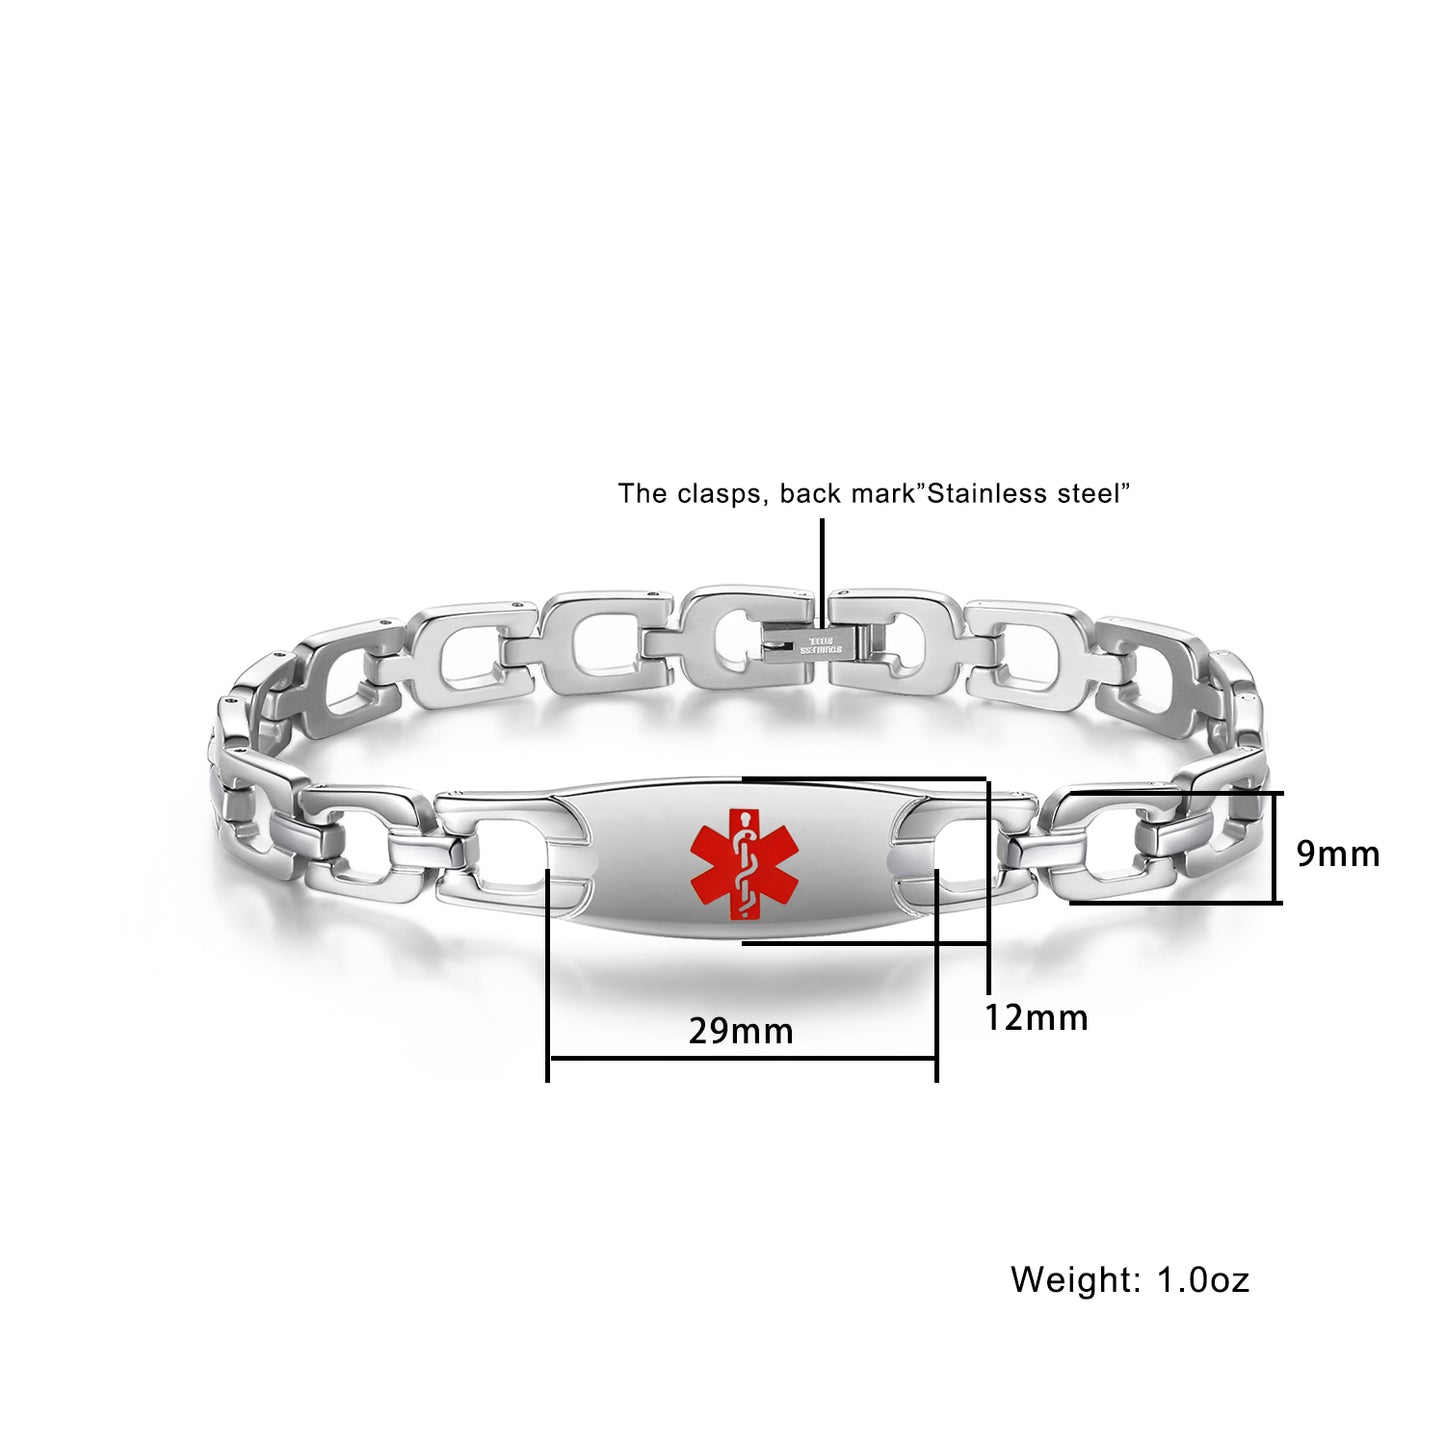 Stainless Steel Horseshoe Medical Alert Bracelets for Women by LinnaLove